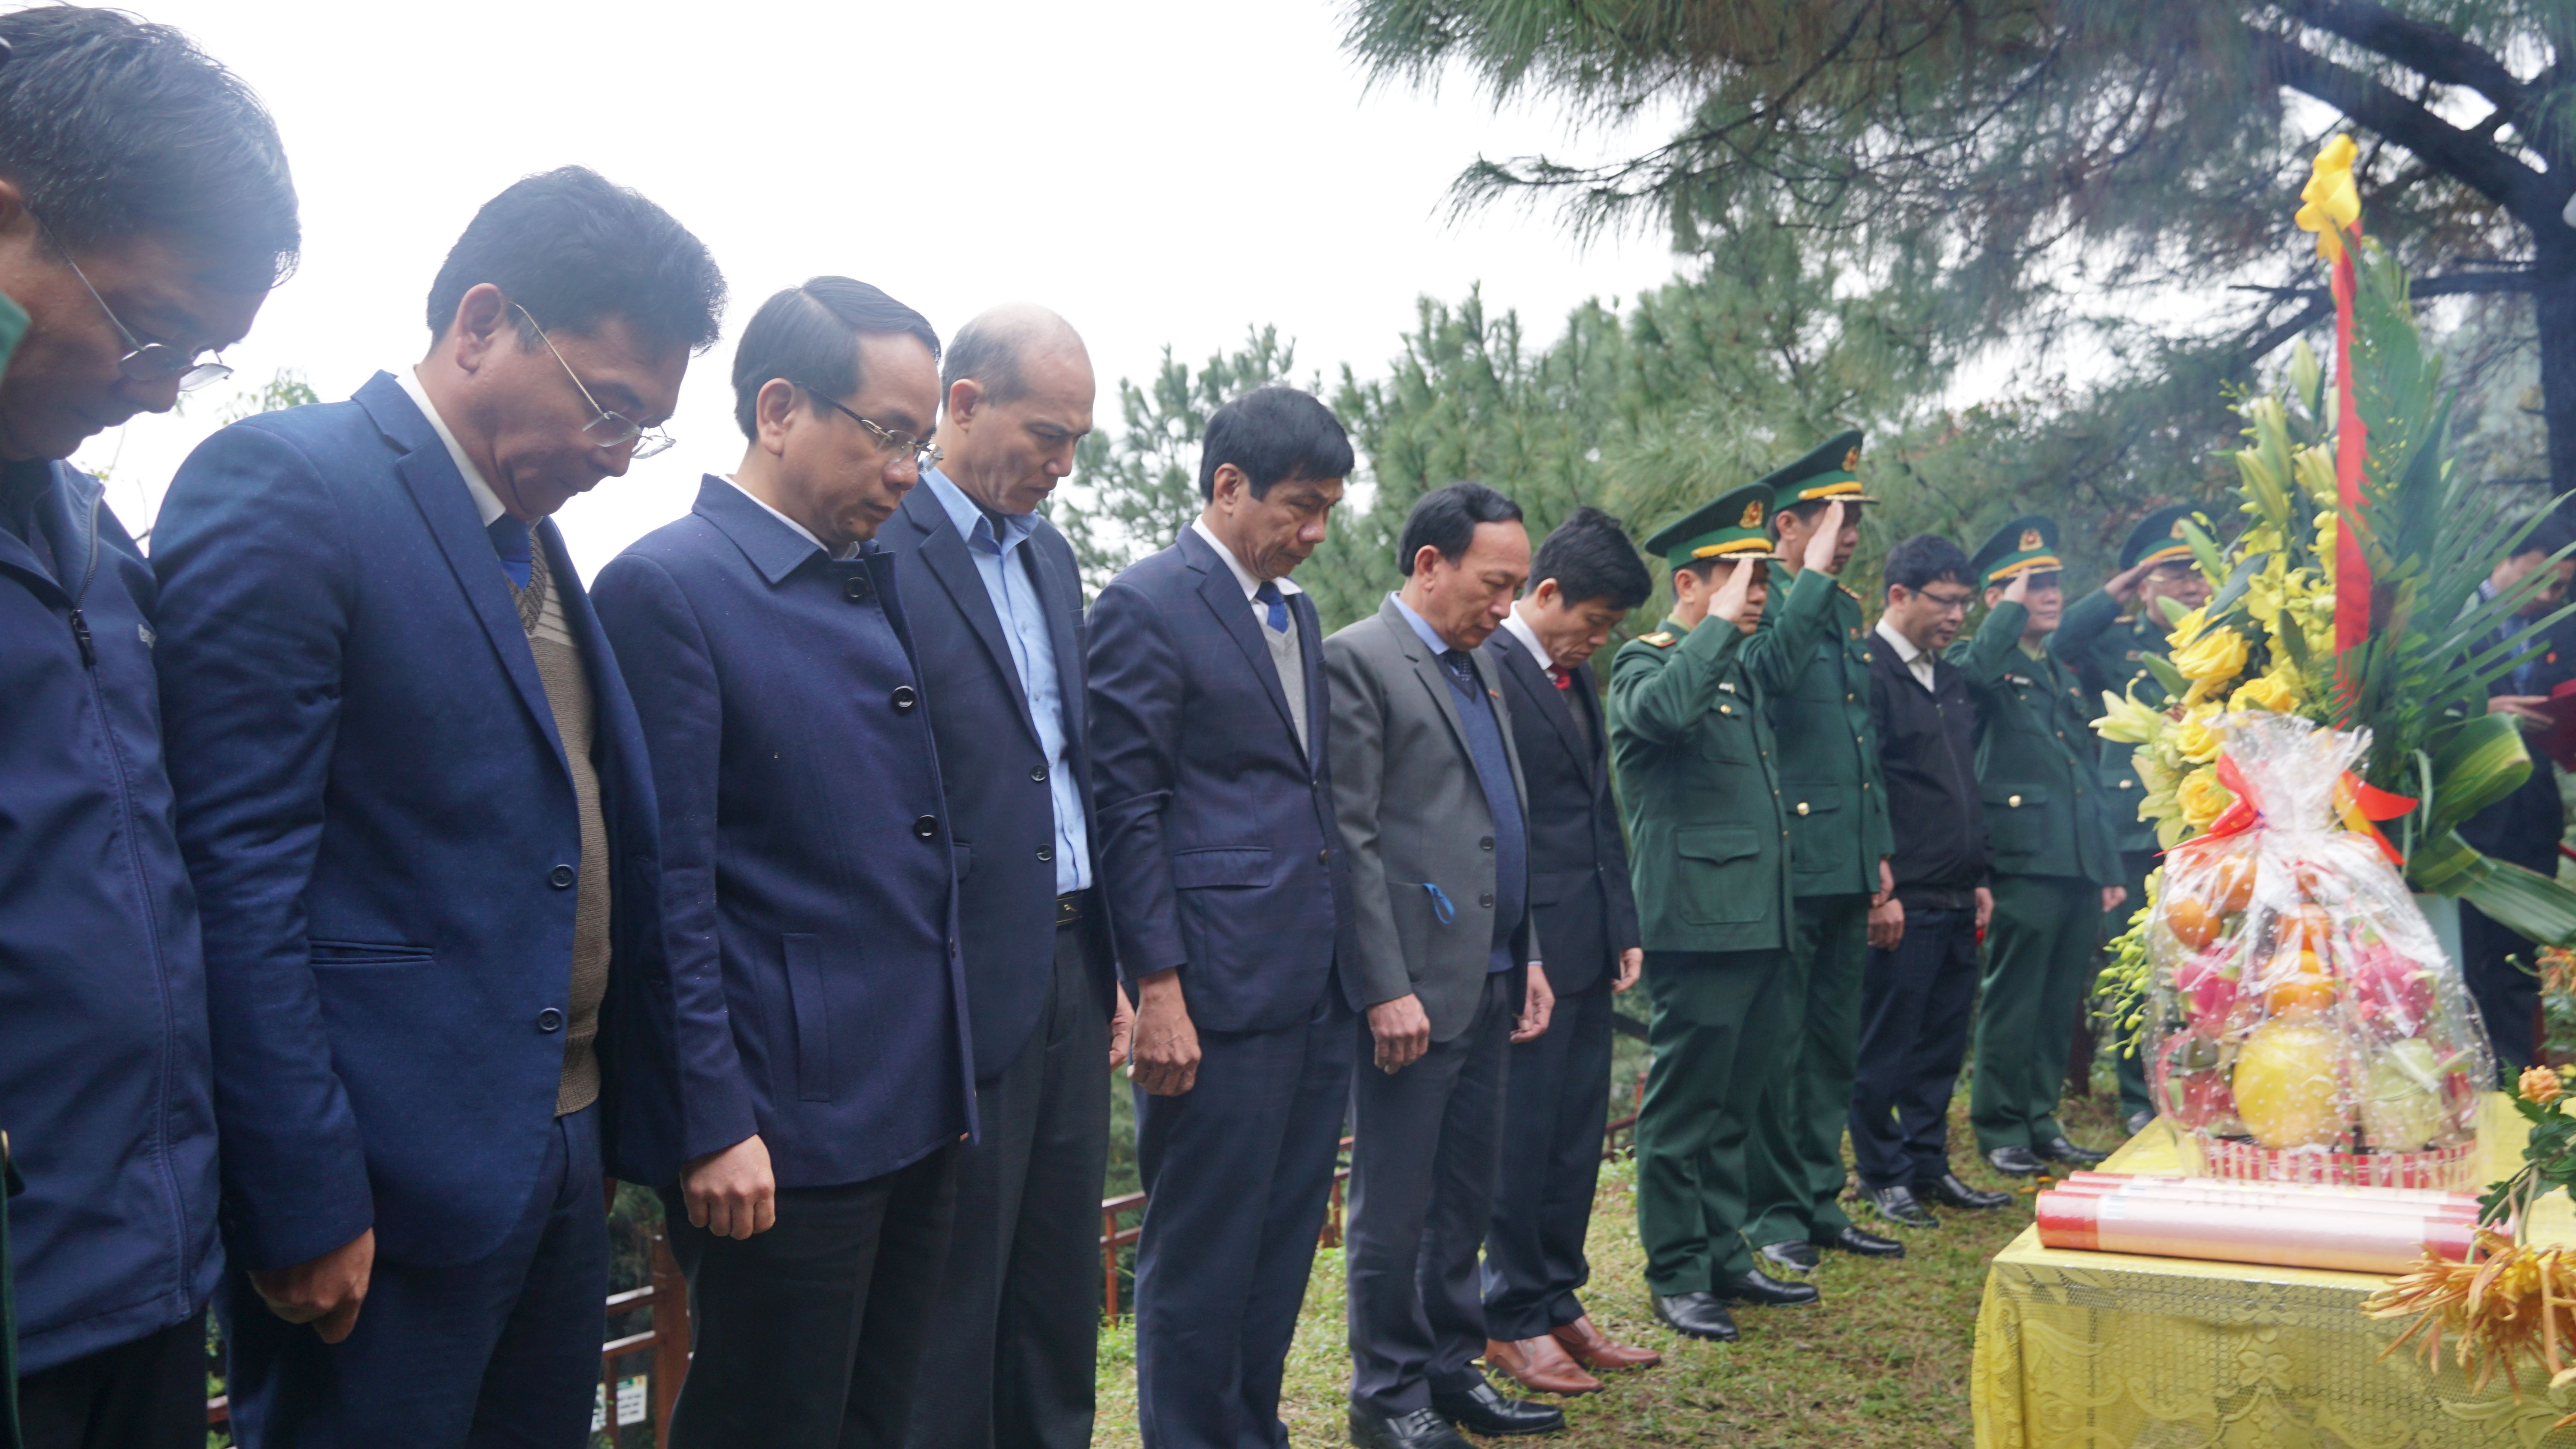 Đồng chí Phó Bí thư Thường trực Tỉnh ủy Trần Hải Châu cùng các đại biểu dành phút mặc niệm bày tỏ lòng thành kính, tri ân sâu sắc công lao to lớn của Đại tướng Võ Nguyên Giáp.